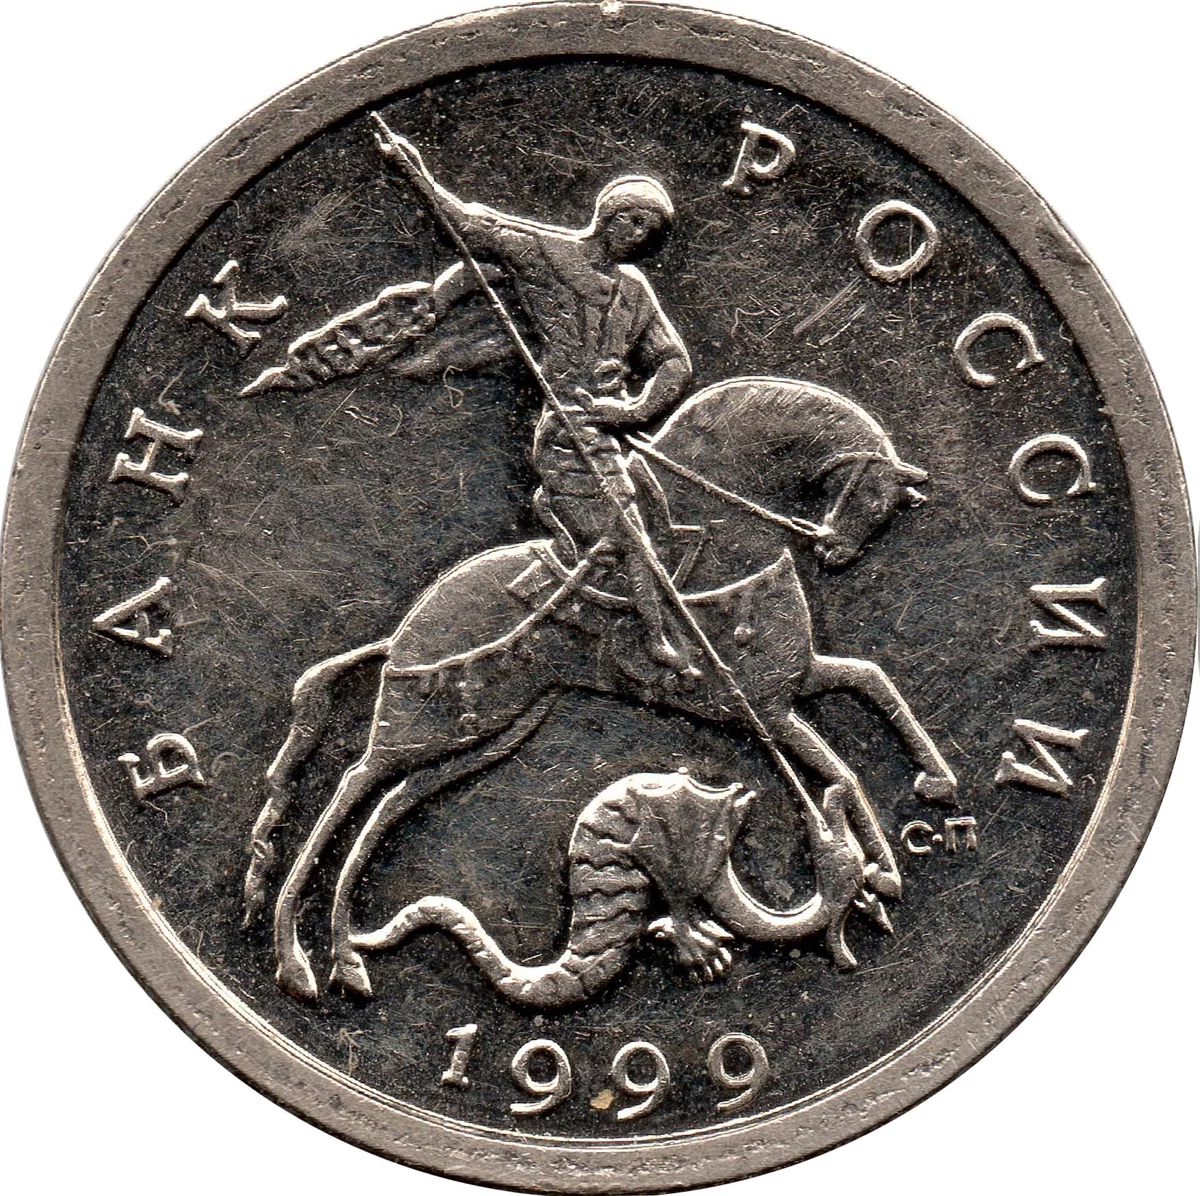 Монеты 5 копеек СП 1999. 5 Копеек 1999 года СПМД. Монета 5 копеек 1999 ММД. Монета 5 копеек 1999.